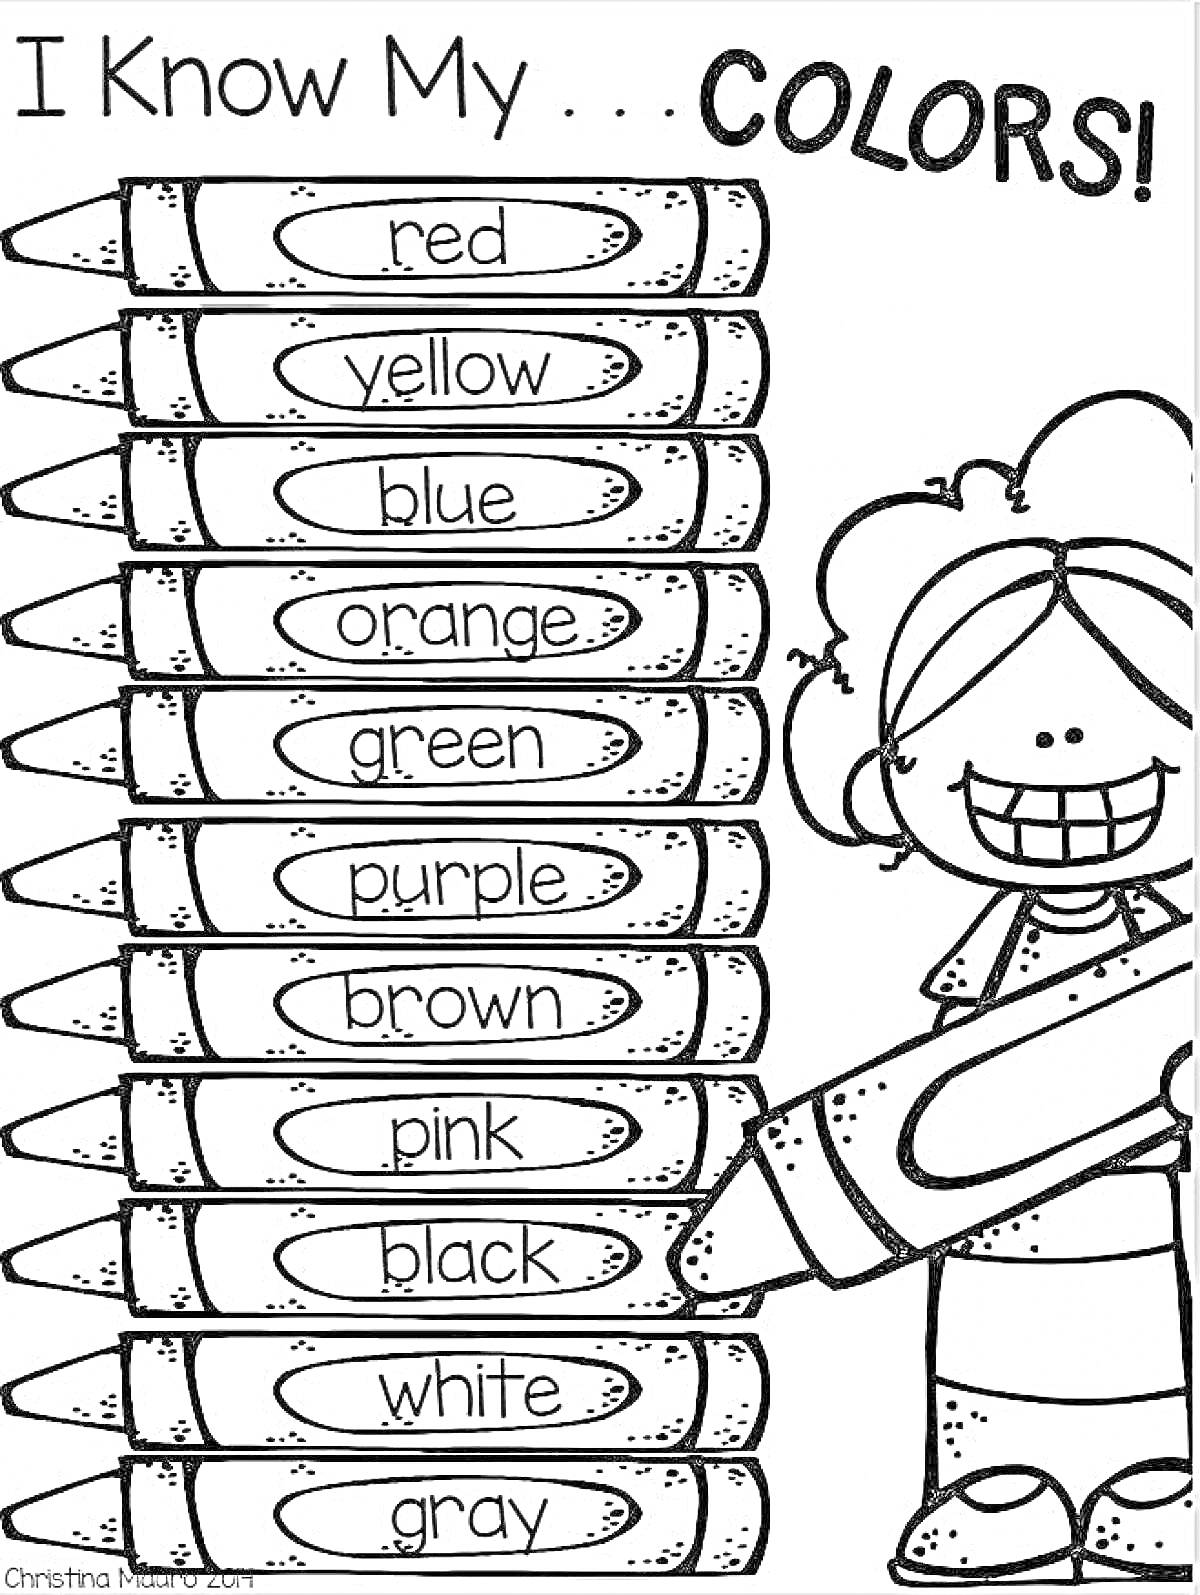 Раскраска Я знаю свои цвета! (мальчик с карандашами красного, жёлтого, синего, оранжевого, зелёного, фиолетового, коричневого, розового, чёрного, белого и серого цвета)